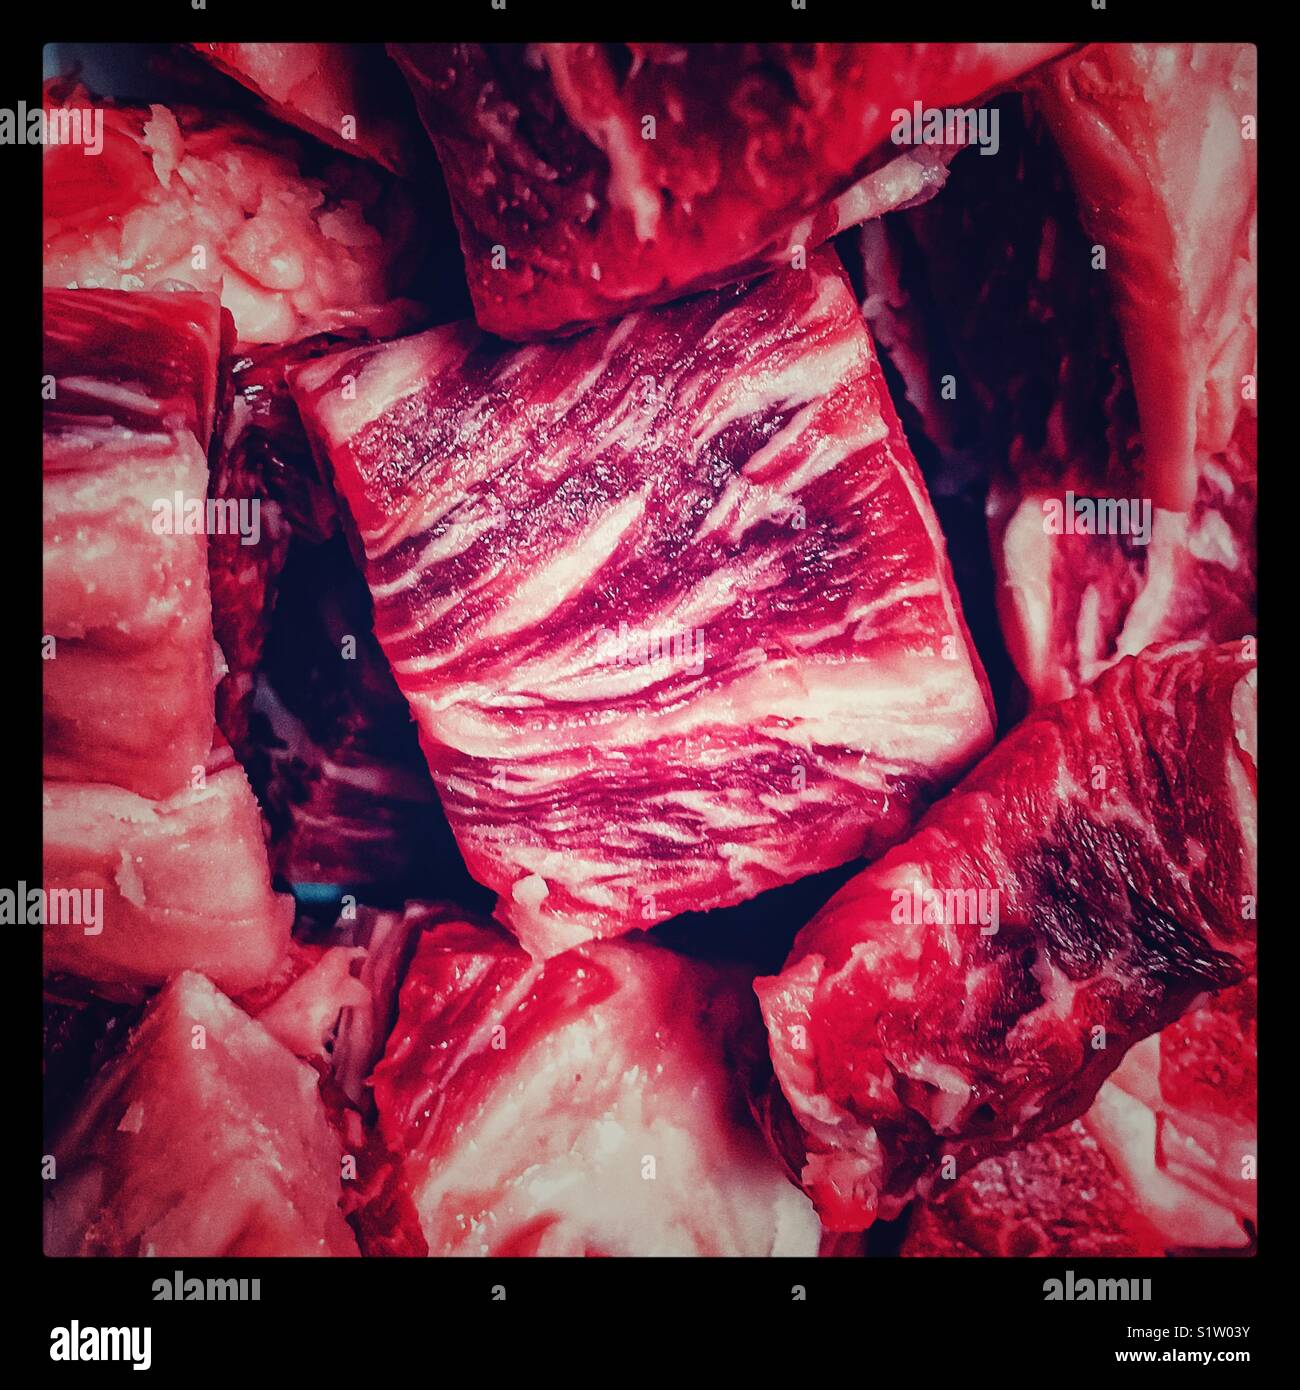 Würfel von Rindfleisch für Fondue Abendessen vorbereitet Stockfoto